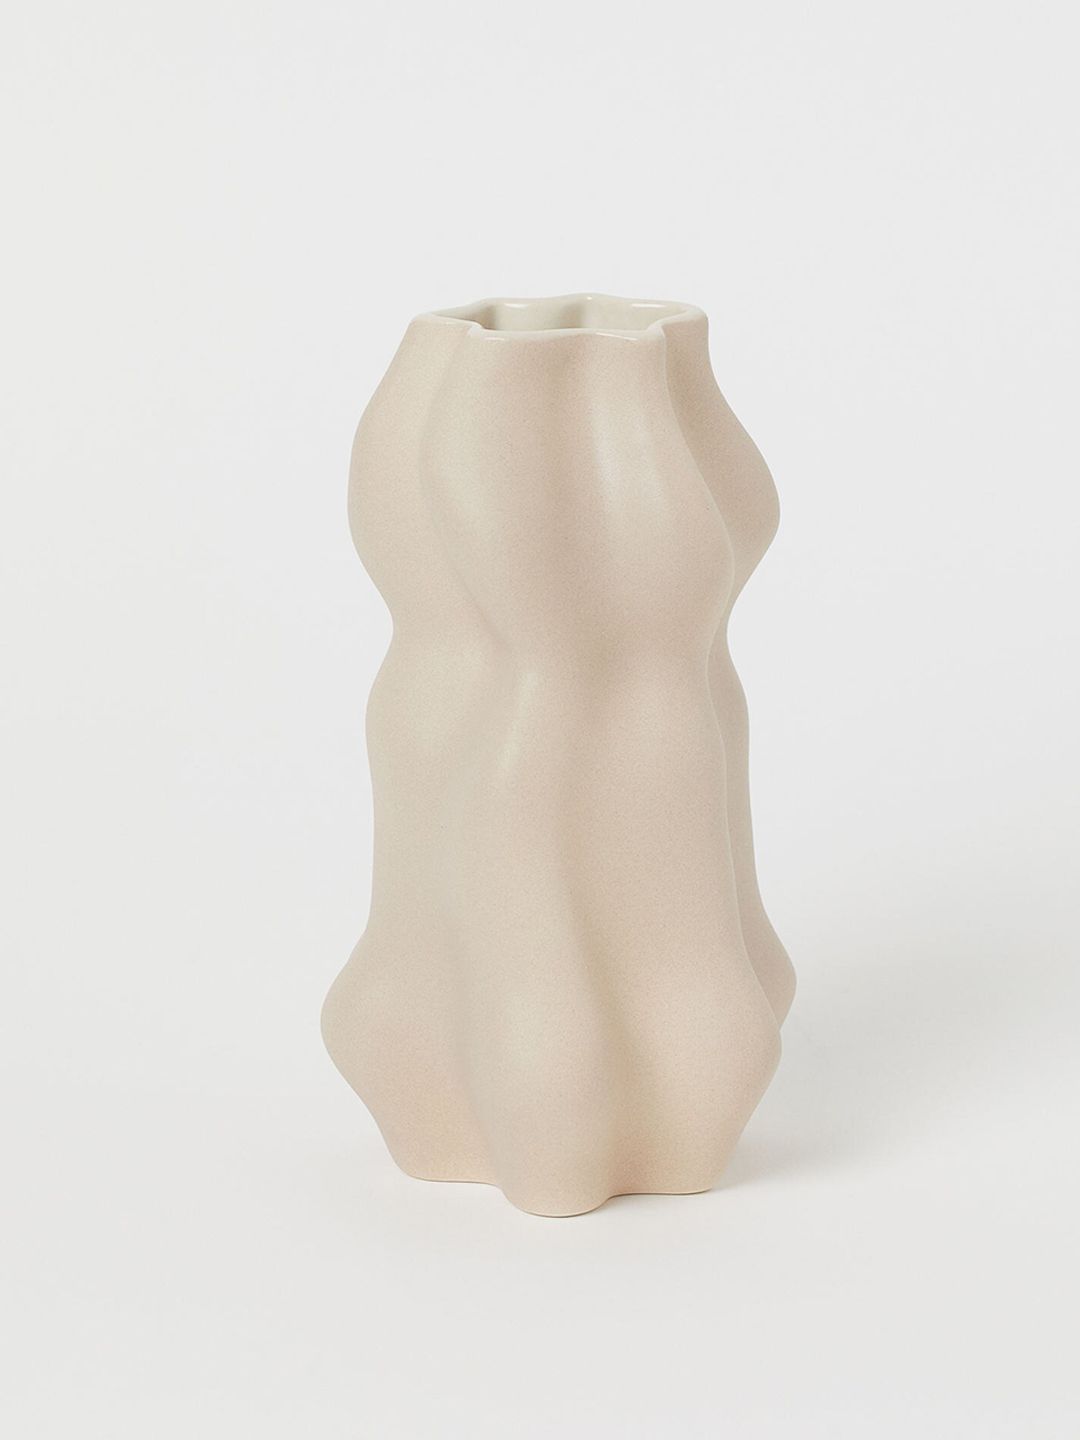 H&M Small Ceramic Vase Price in India